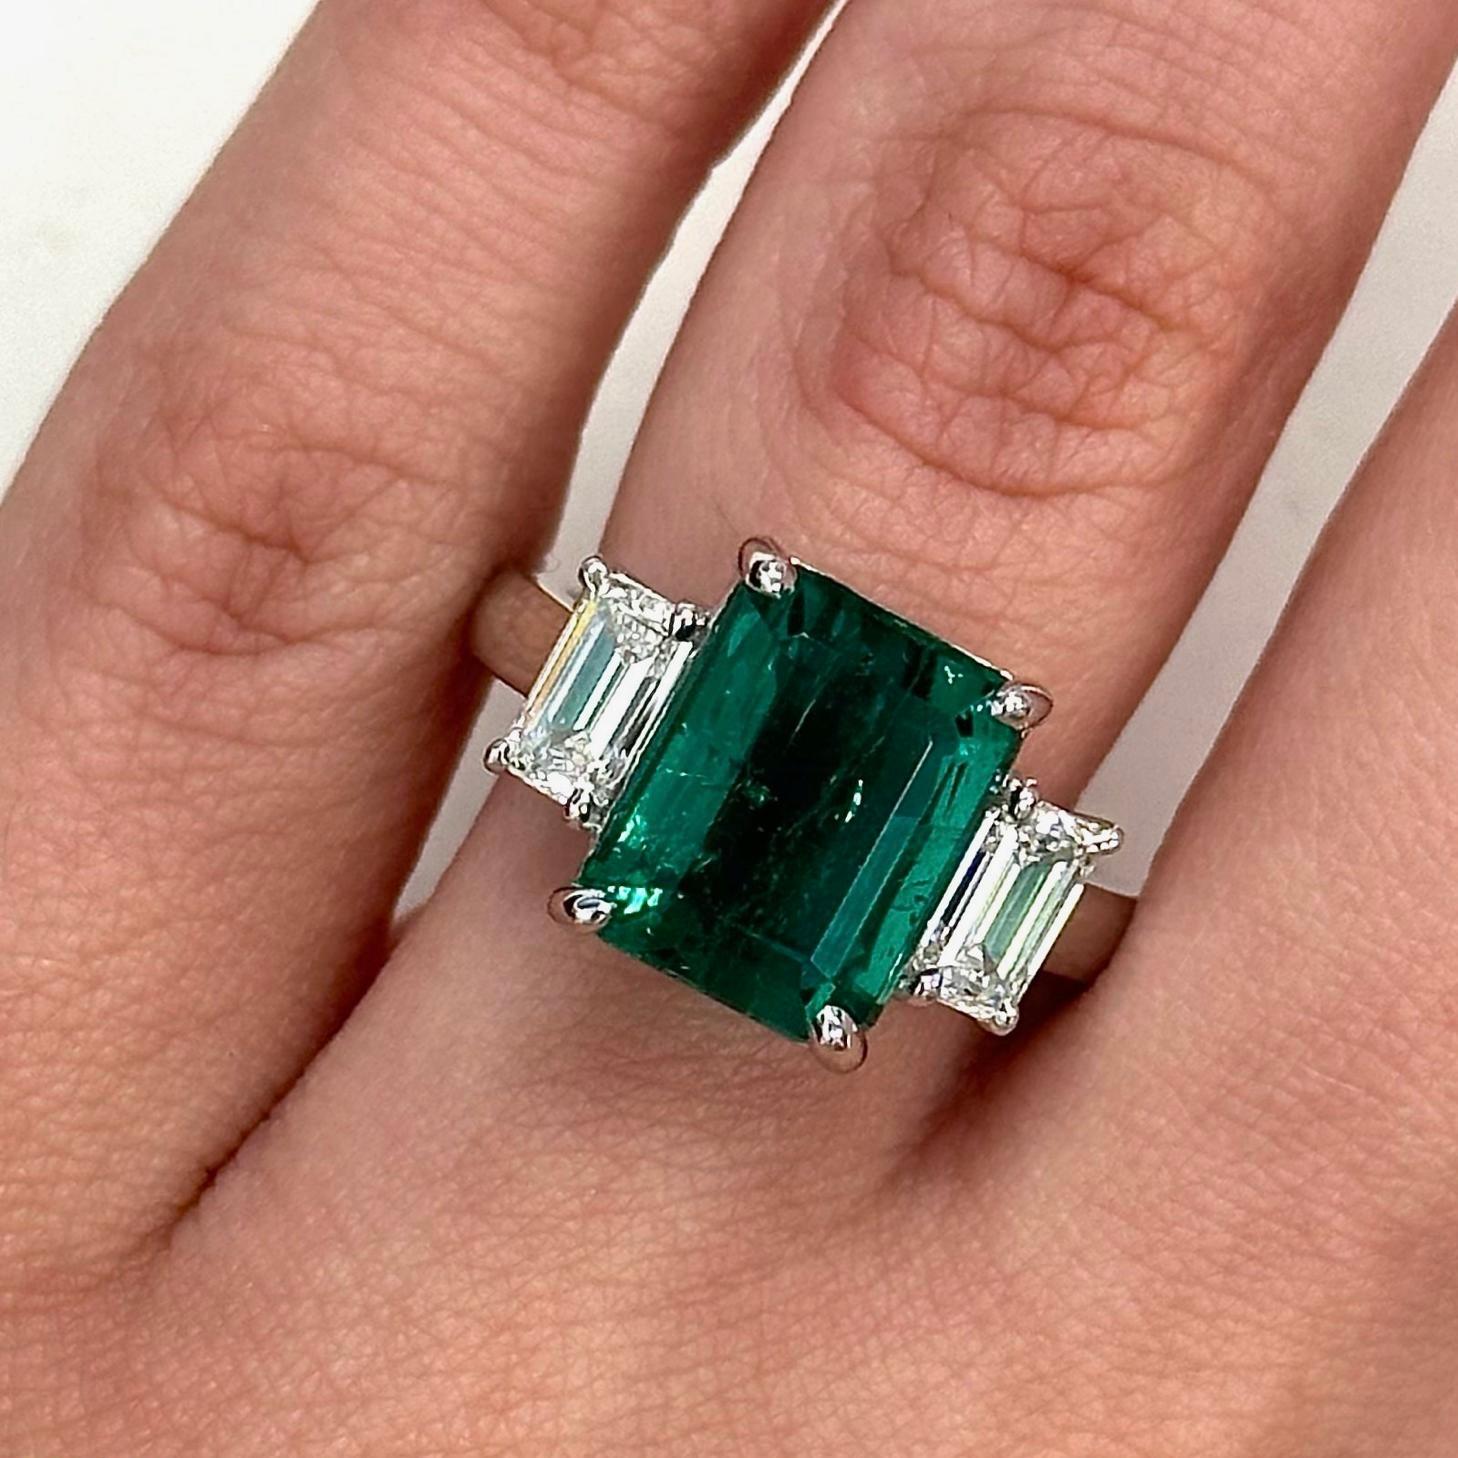 Beeindruckender GIA-zertifizierter Smaragd mit GIA-zertifizierten Diamanten im Smaragdschliff mit drei Steinen. Hochwertige Schmuckstücke von Alexander Beverly Hills.
5.74 Karat Gesamtgewicht der Edelsteine. 
GIA-zertifizierter Smaragd von 4,74